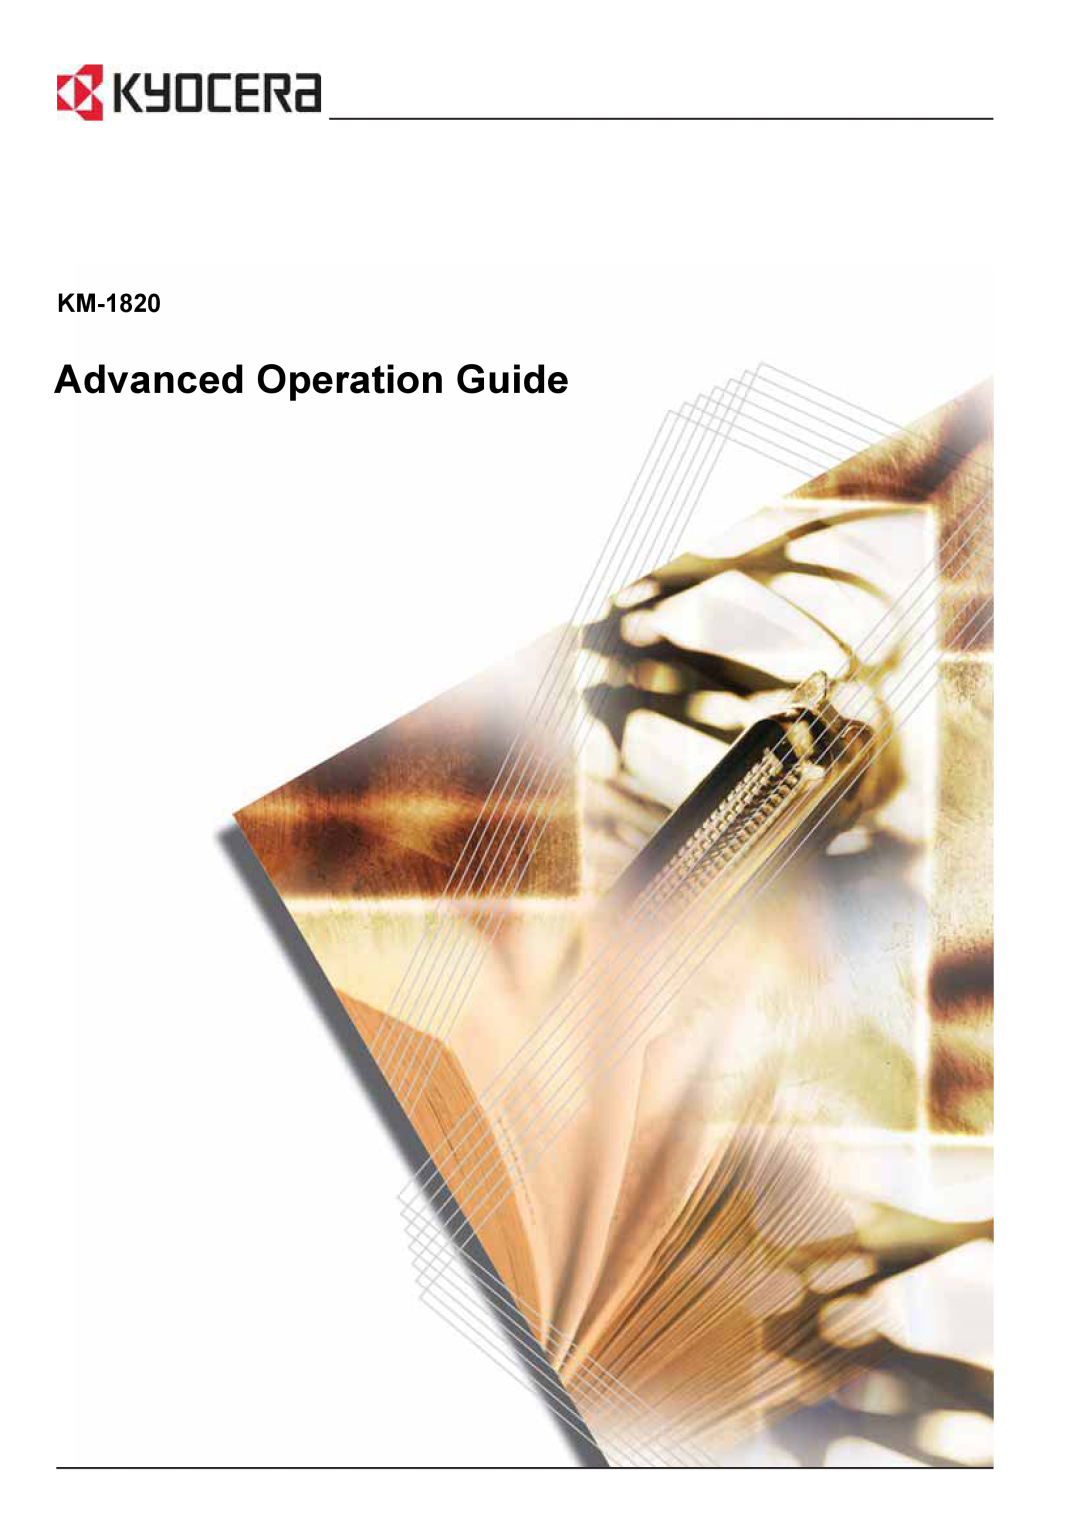 Kyocera KM-1820 manual Advanced Operation Guide 